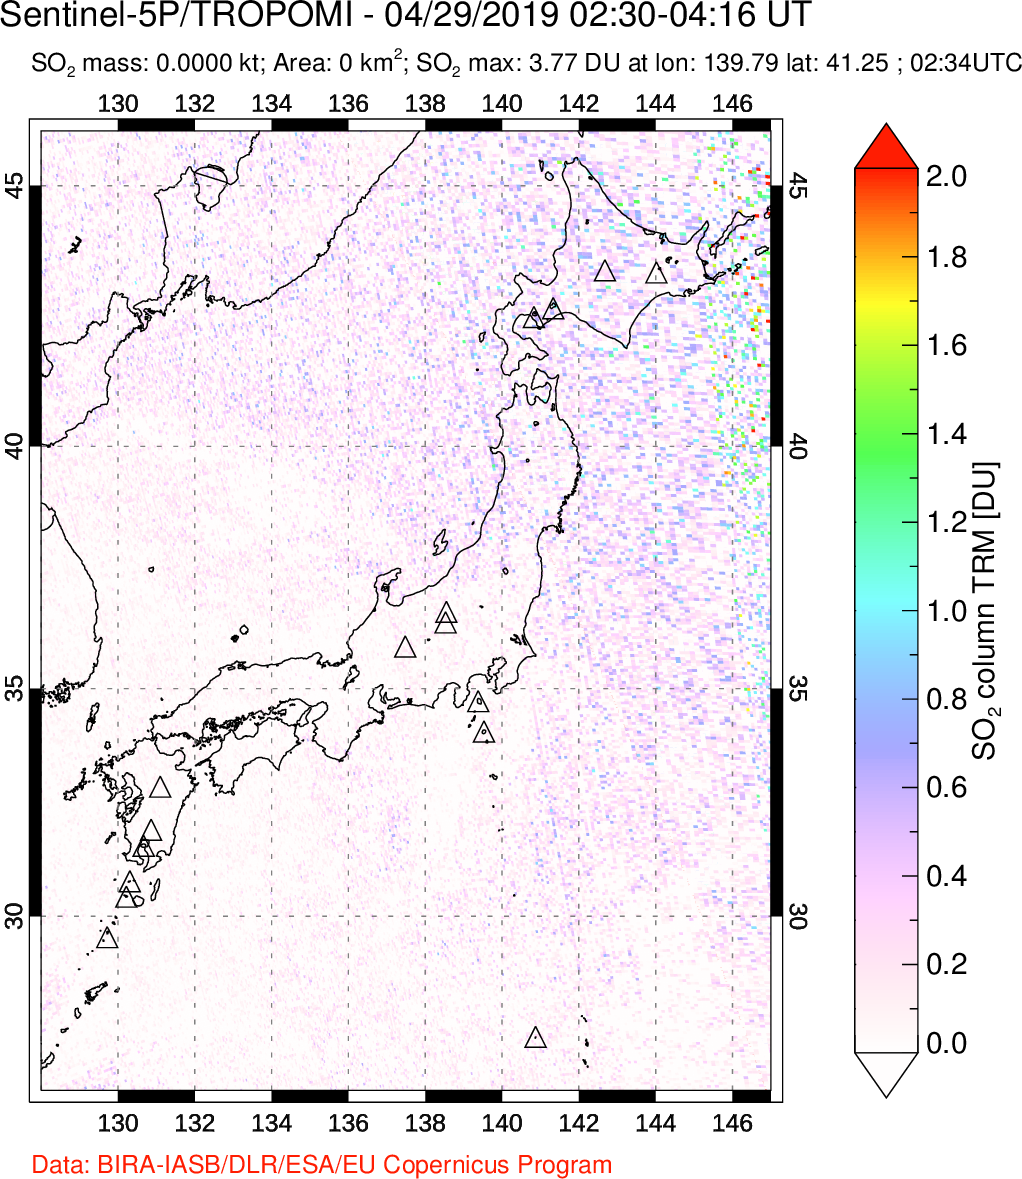 A sulfur dioxide image over Japan on Apr 29, 2019.